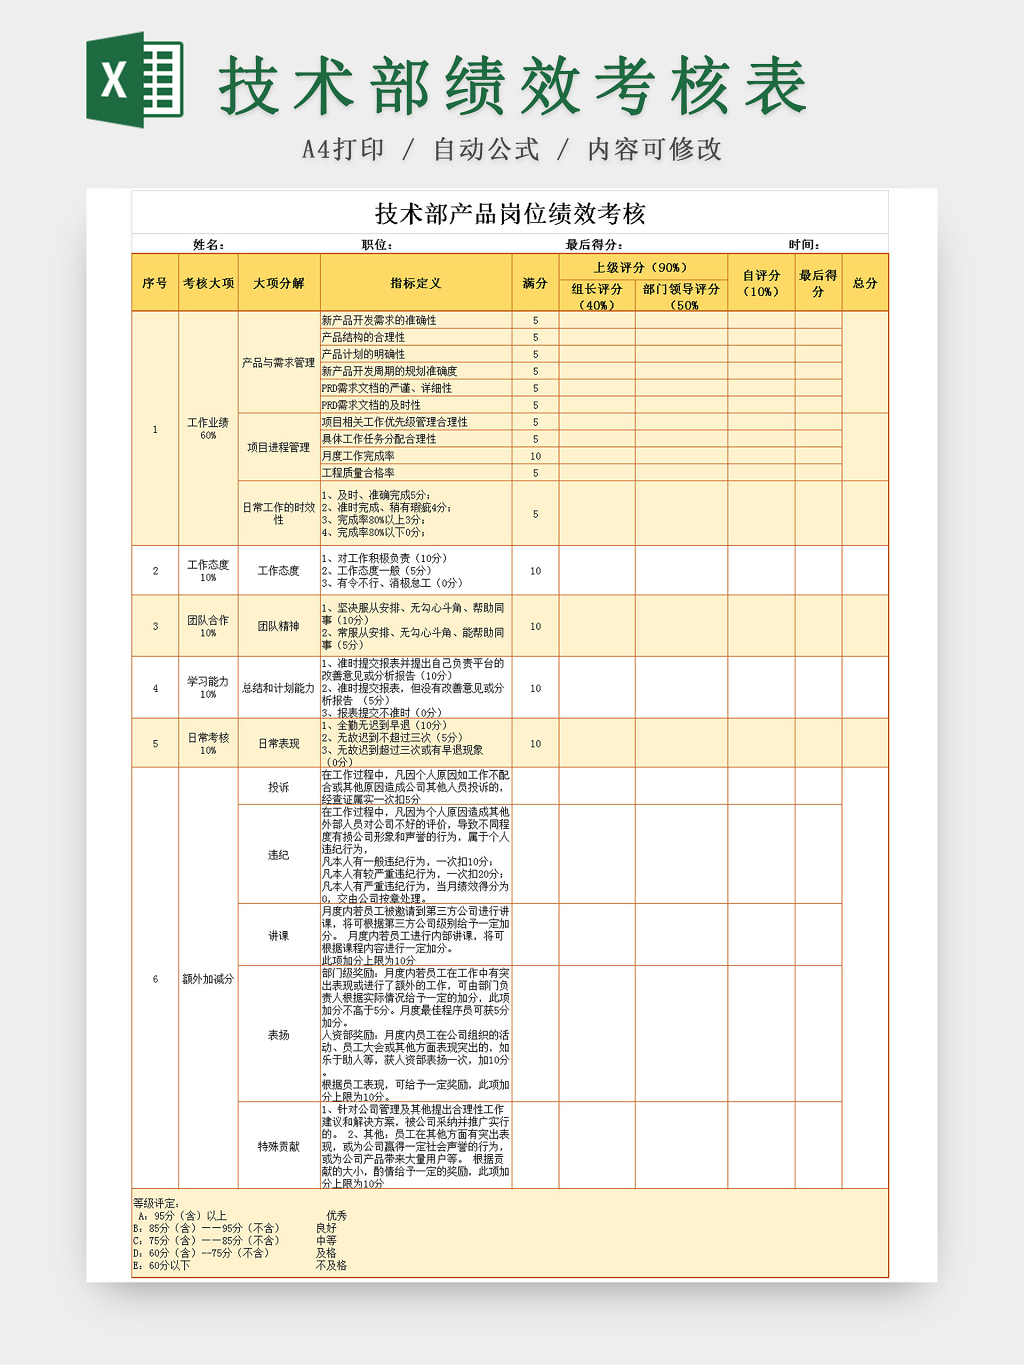 技术部门产品岗位绩效考核Excel表